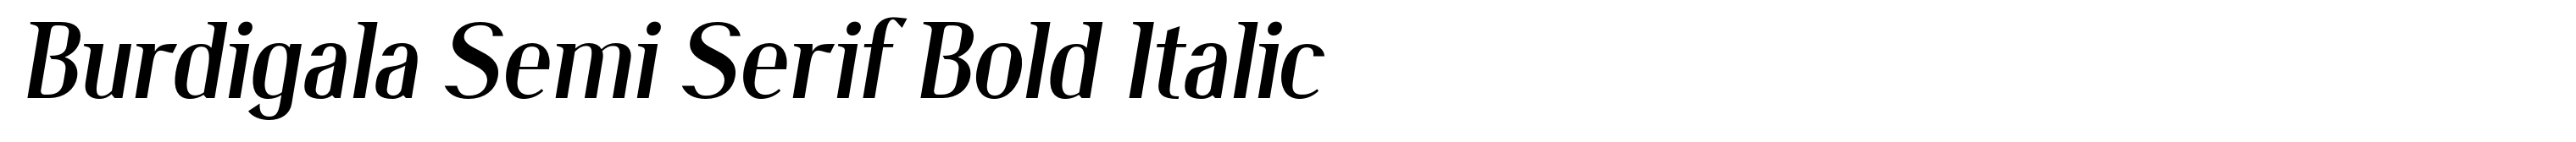 Burdigala Semi Serif Bold Italic